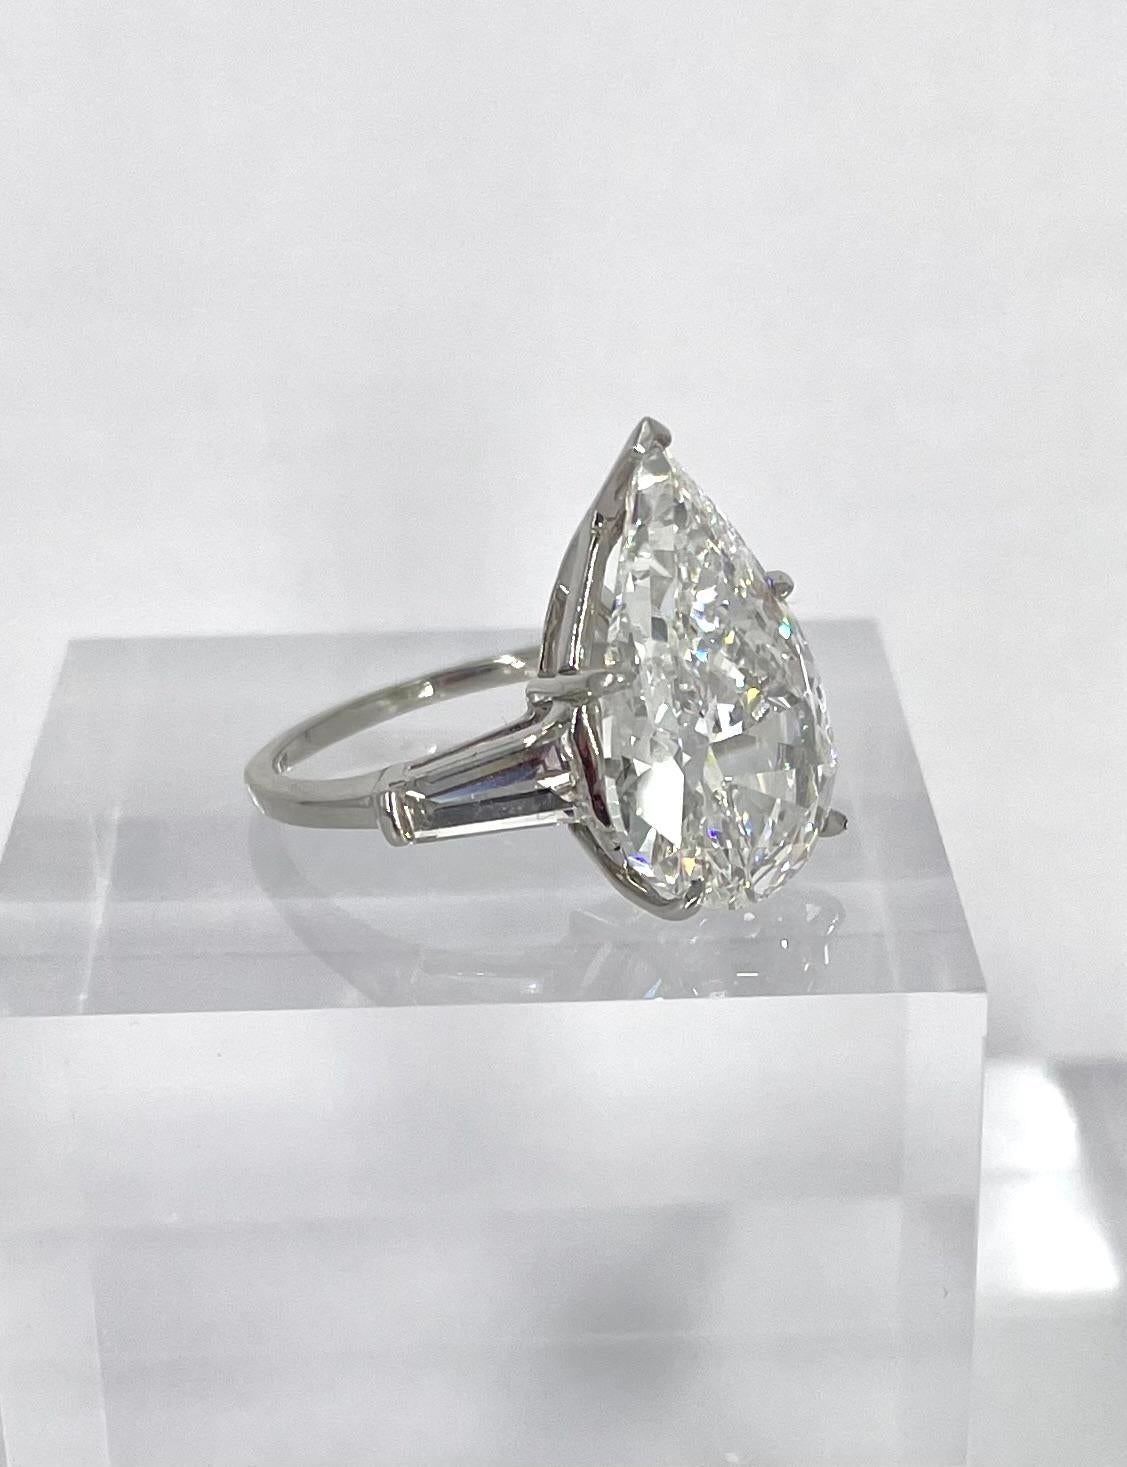 Cette bague en diamant poire de 10,03 carats avec baguettes effilées est une exécution étonnante d'un style intemporel qui fera tourner les têtes ! L'impressionnant diamant central est classé par la GIA comme étant de couleur F et de pureté VS1. Un